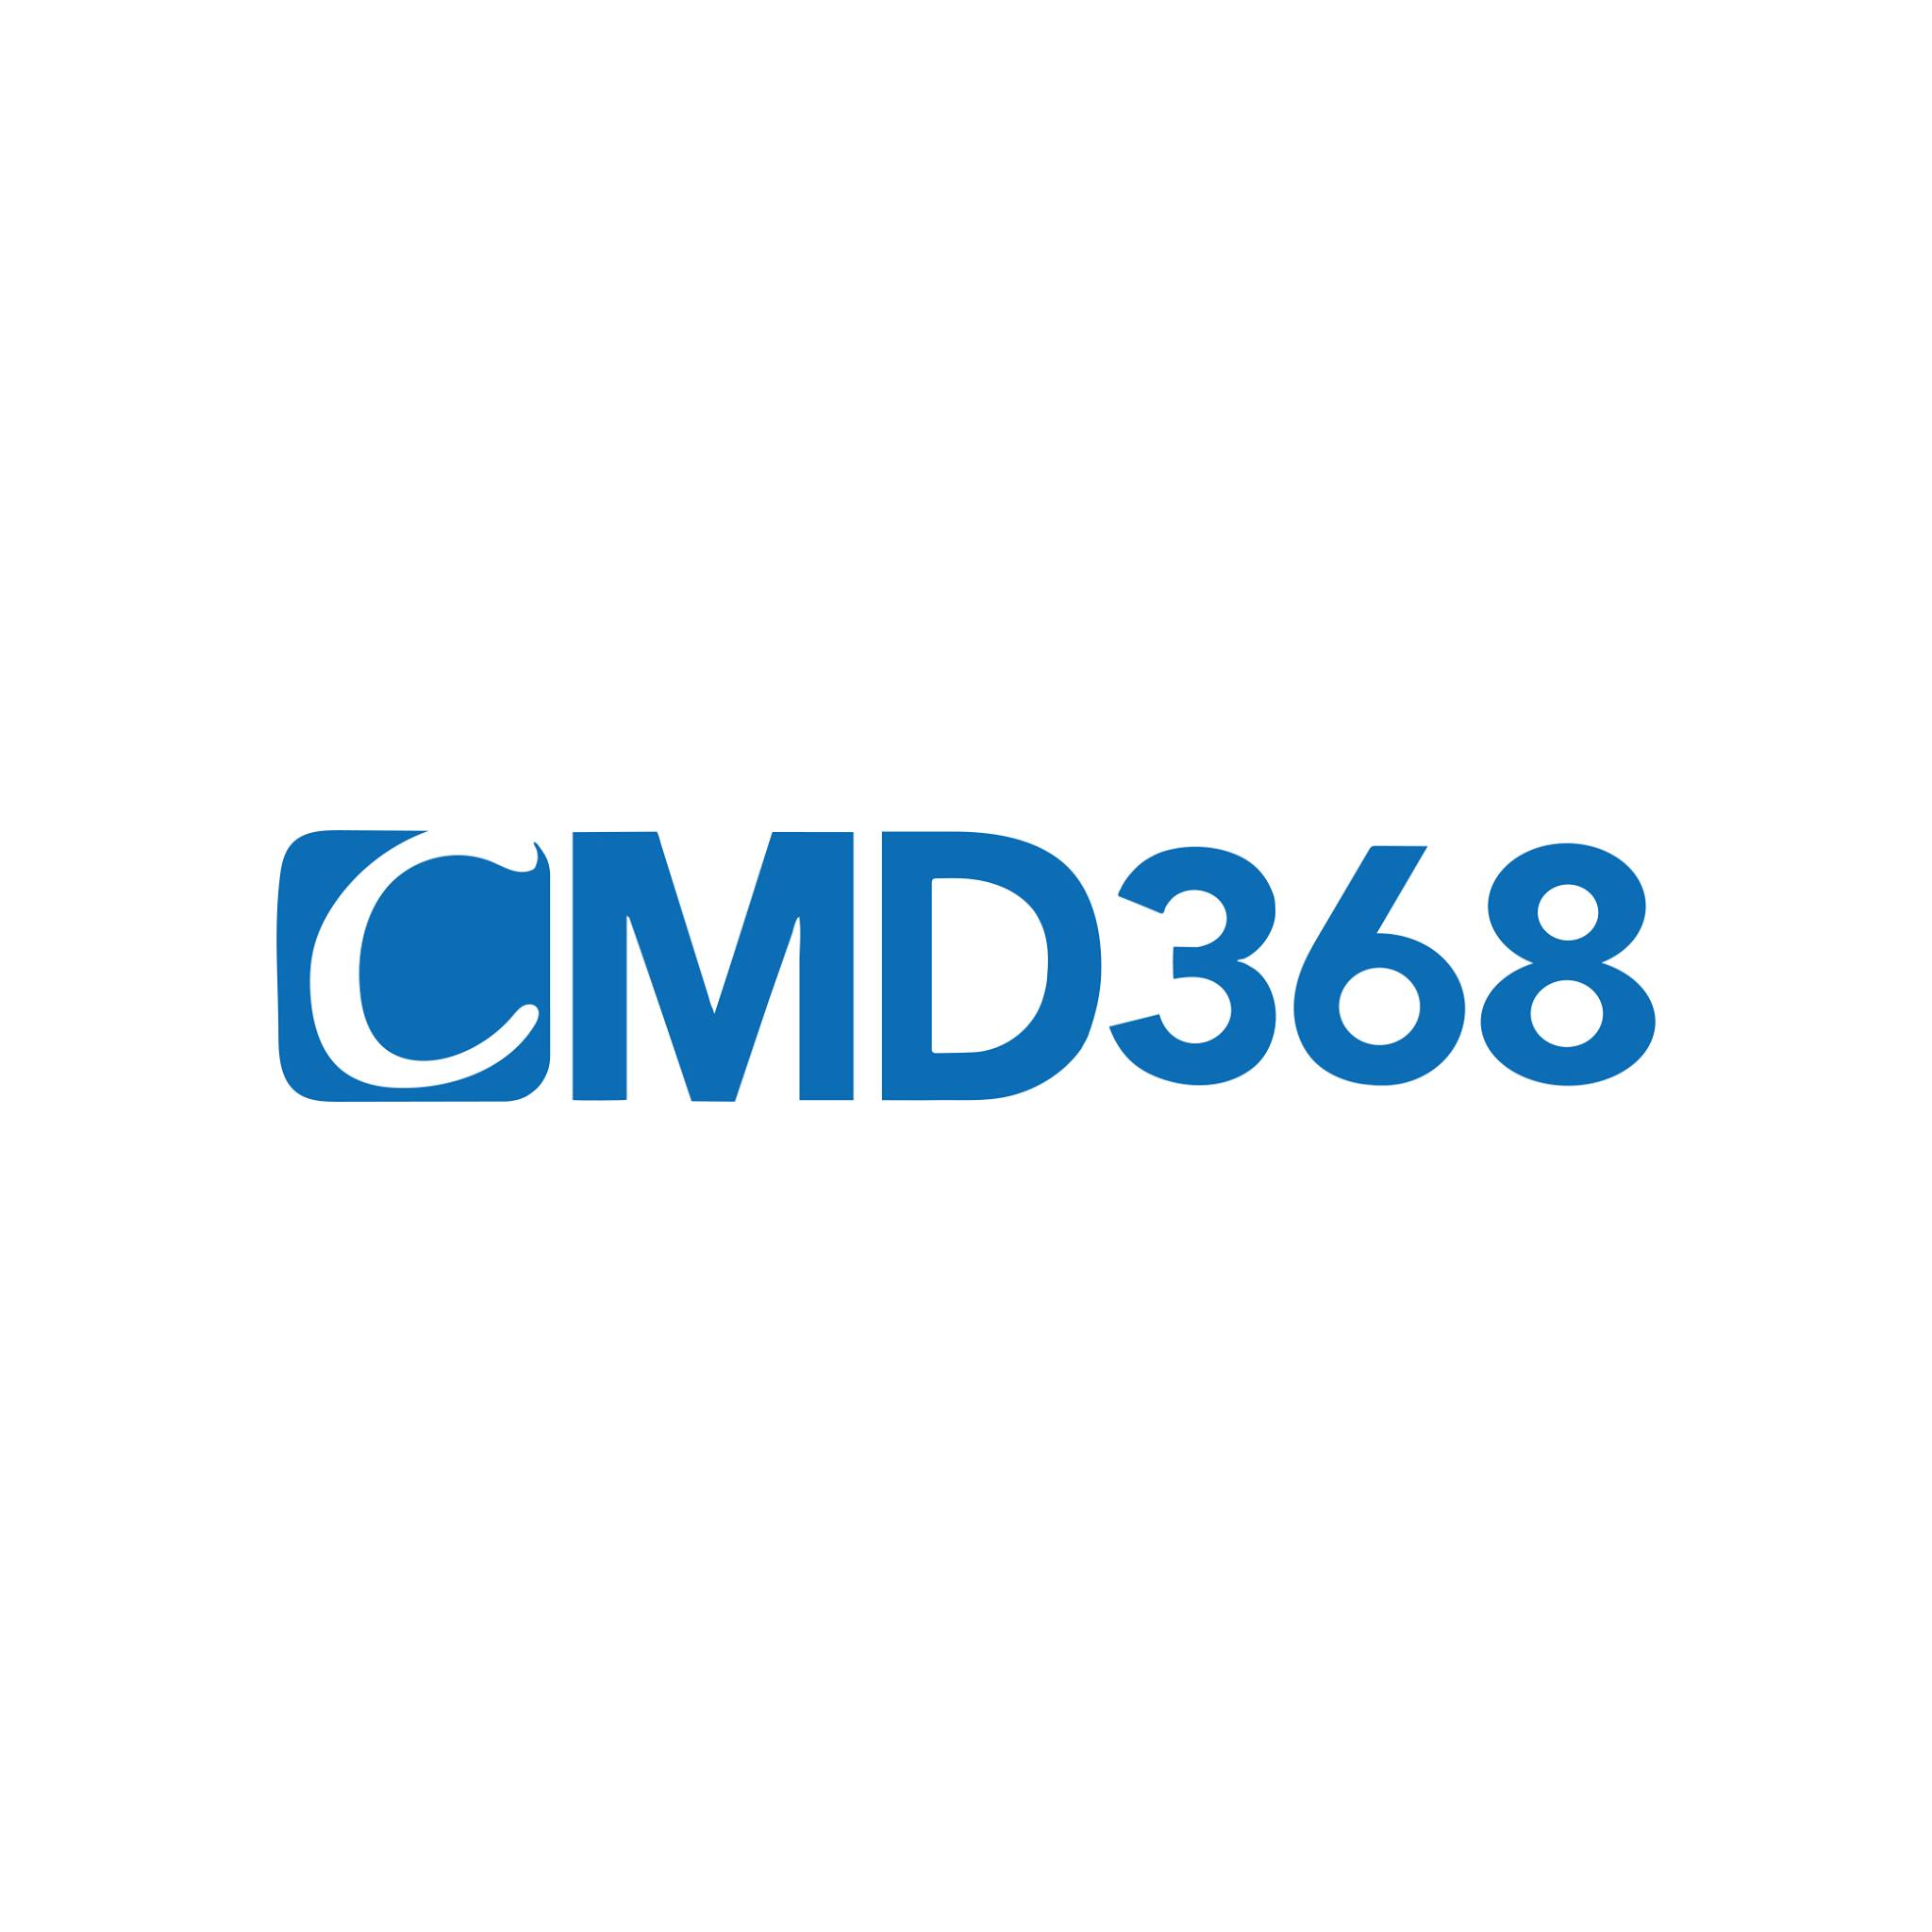 Nhà cái CMD368 và độ tin cậy